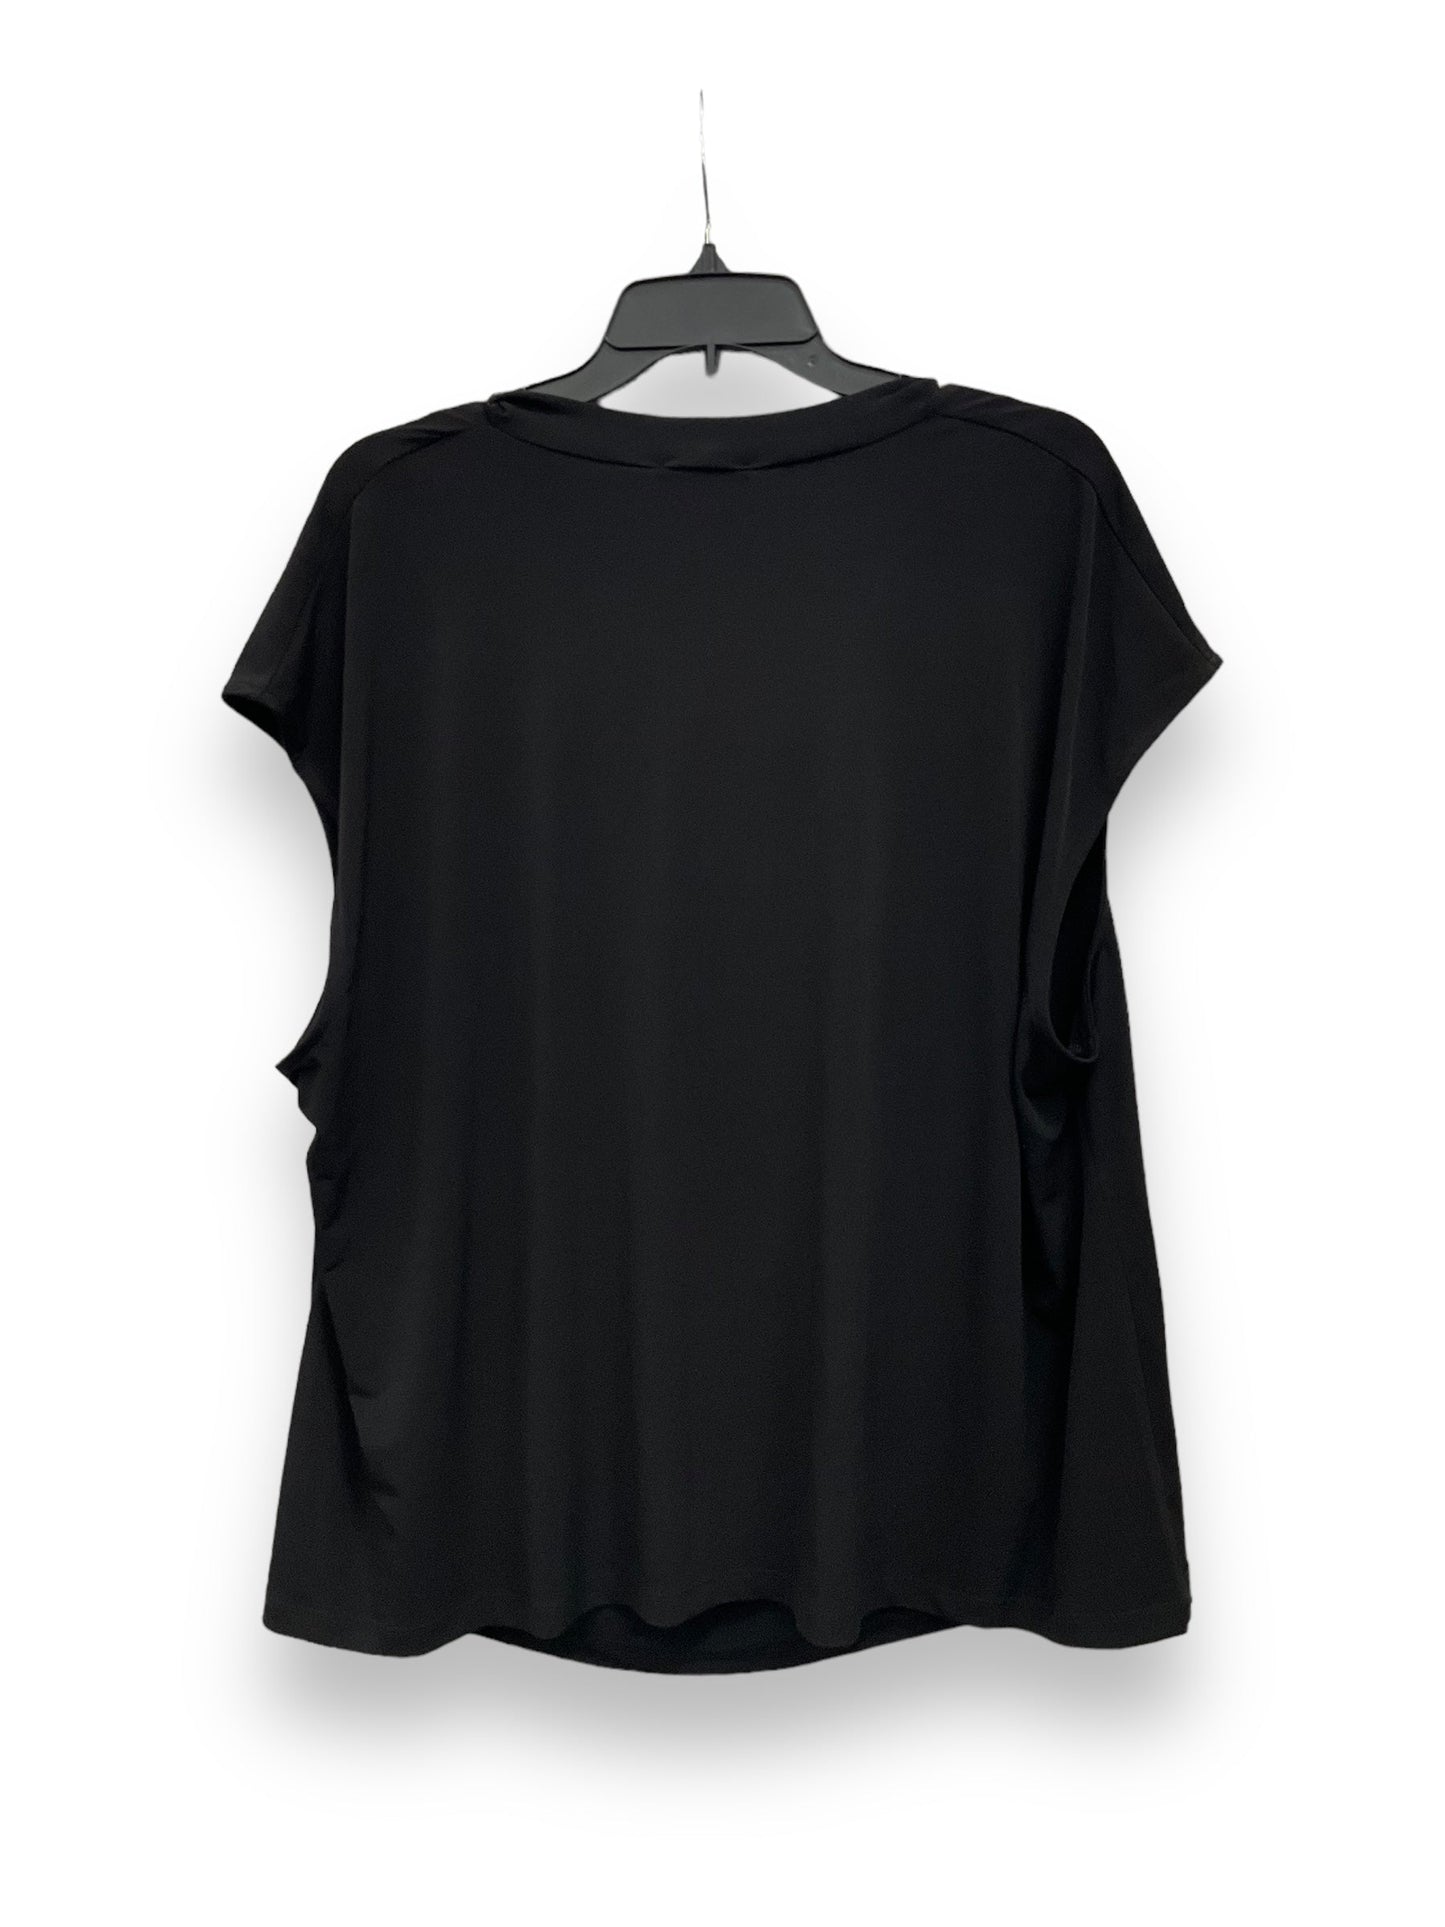 Black Blouse Sleeveless Calvin Klein, Size 2x